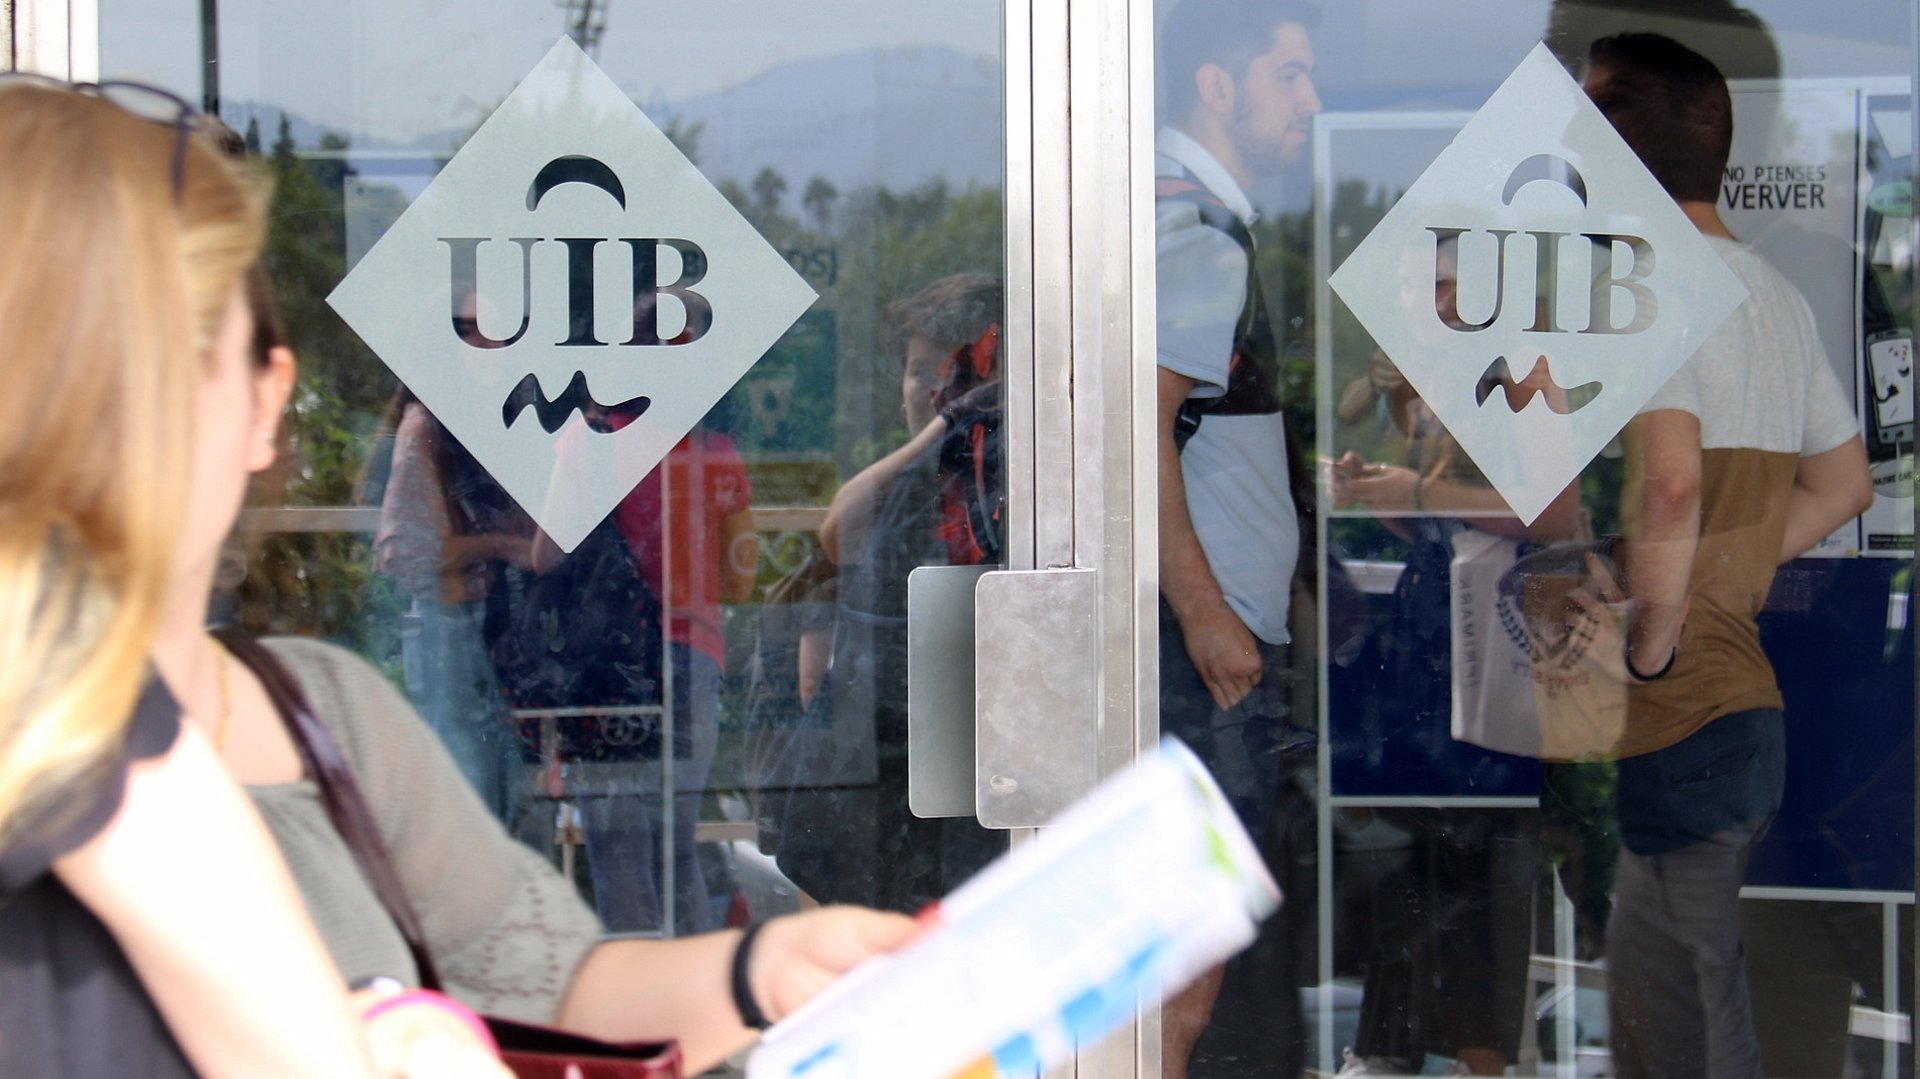 El rector de la UIB propondrá retirar el 'honoris causa' a Francisco Ayala si se confirman las acusaciones de acoso